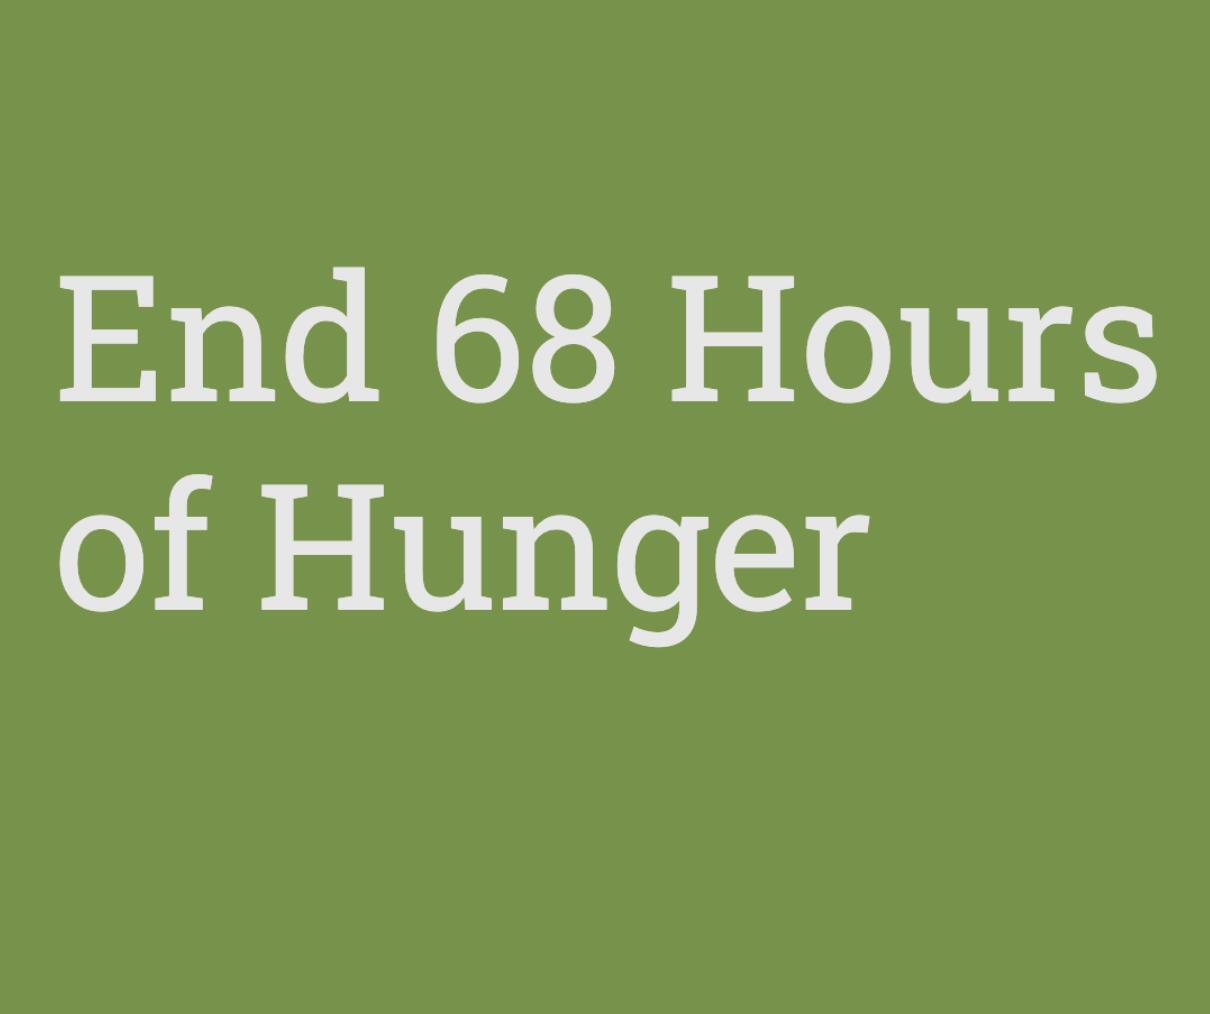 End 68 Hours of Hunger program logo